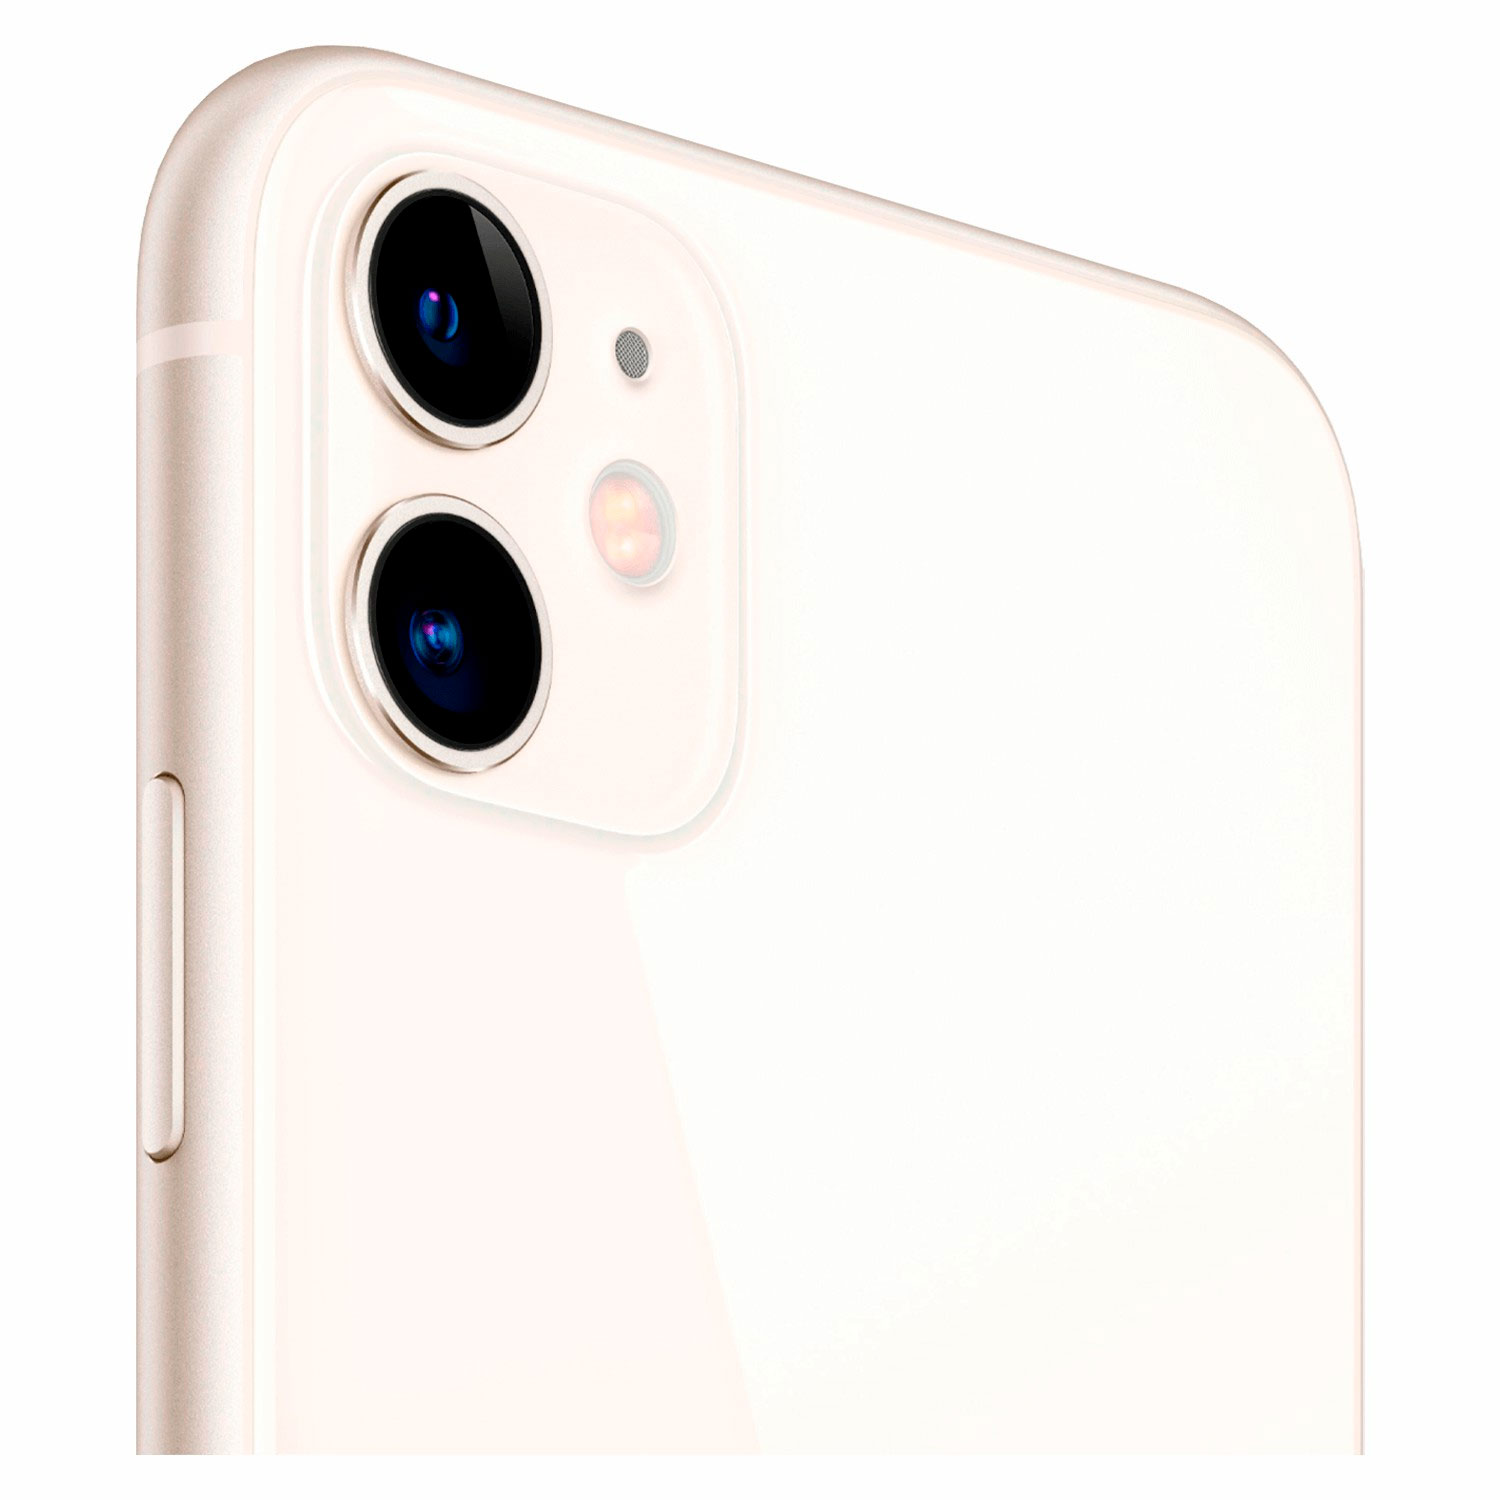 Apple iPhone 11 A2221 LZ 128GB 4GB RAM Tela 6.1" - Branco (Deslacrado) (Caixa Danificada)